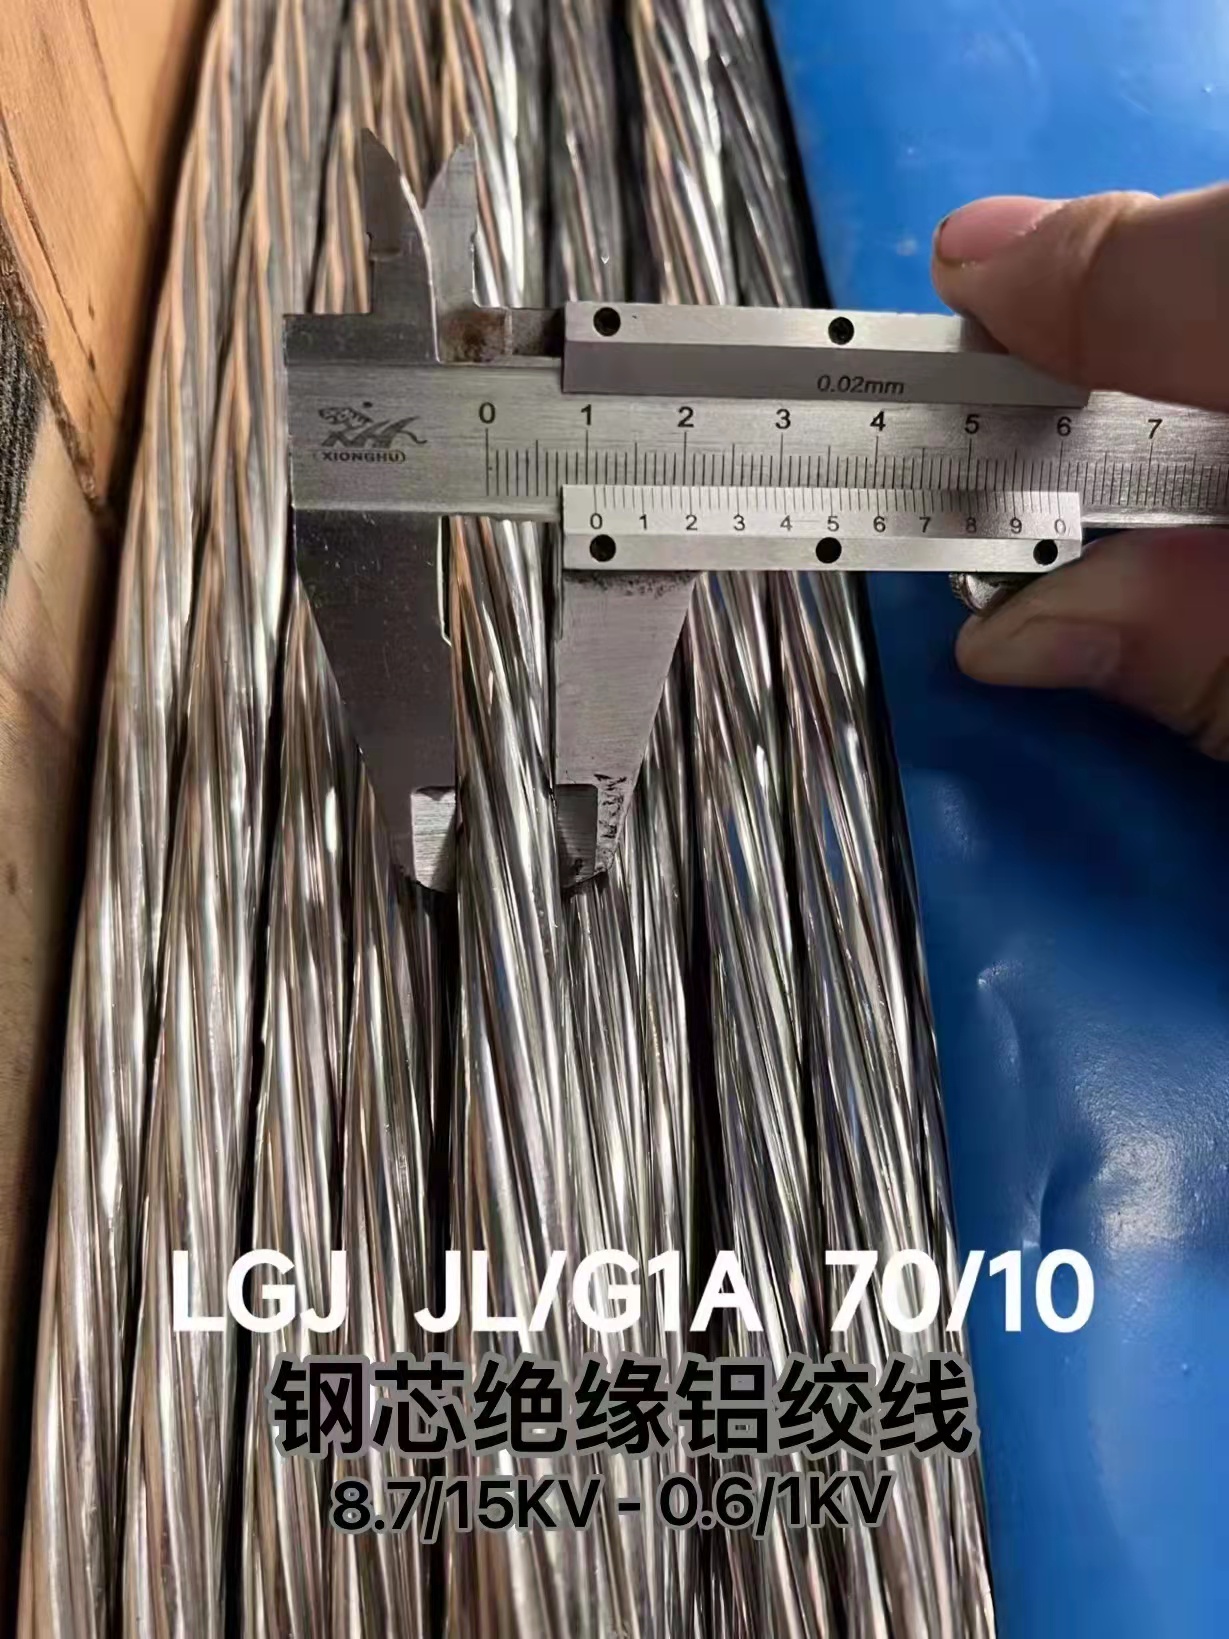 广星电缆LGJJL/G1A 70/10 钢芯绝缘铝绞线 8.7/15KV-0.6/1KV